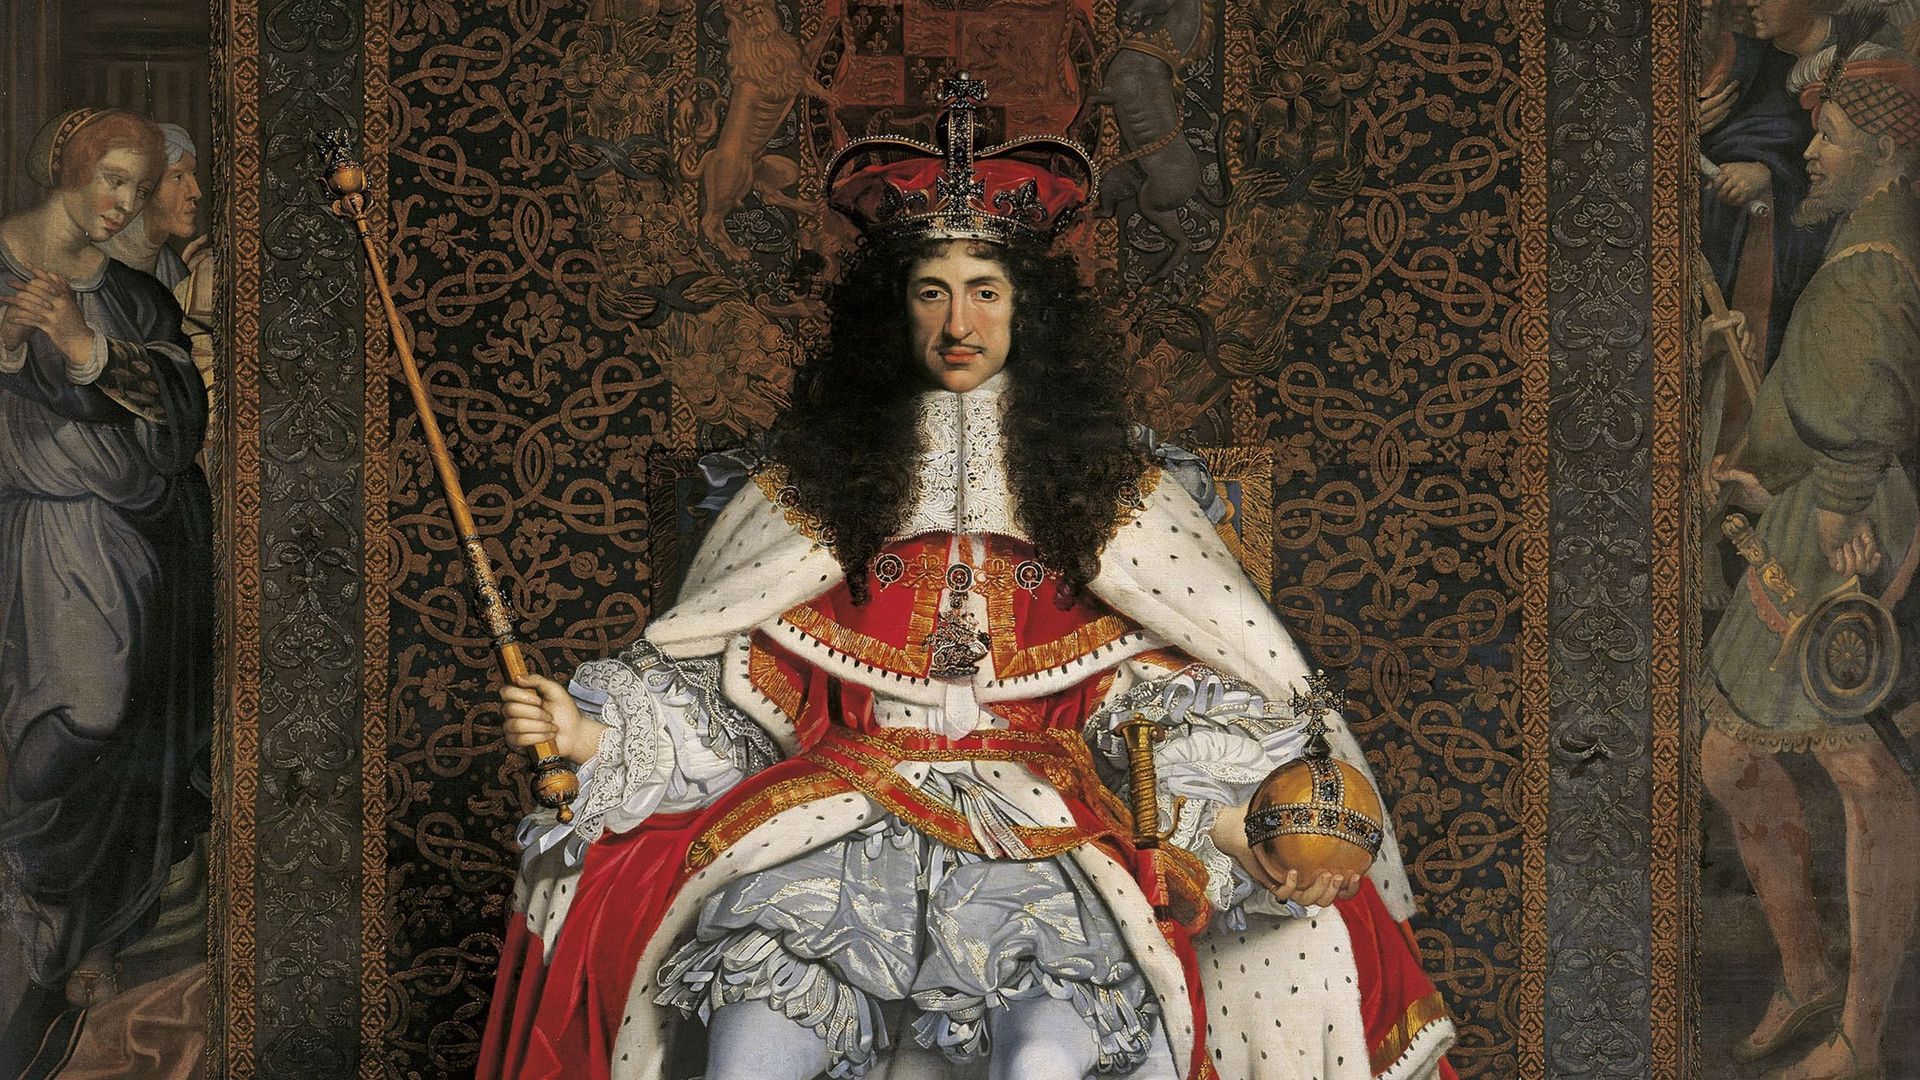 Portrait de Charles II d'Angleterre (1630-1685), vers 1676. Trouvé dans la Collection of Royal Collection, Londres. Artiste Wright, John Michael (1617-1694).